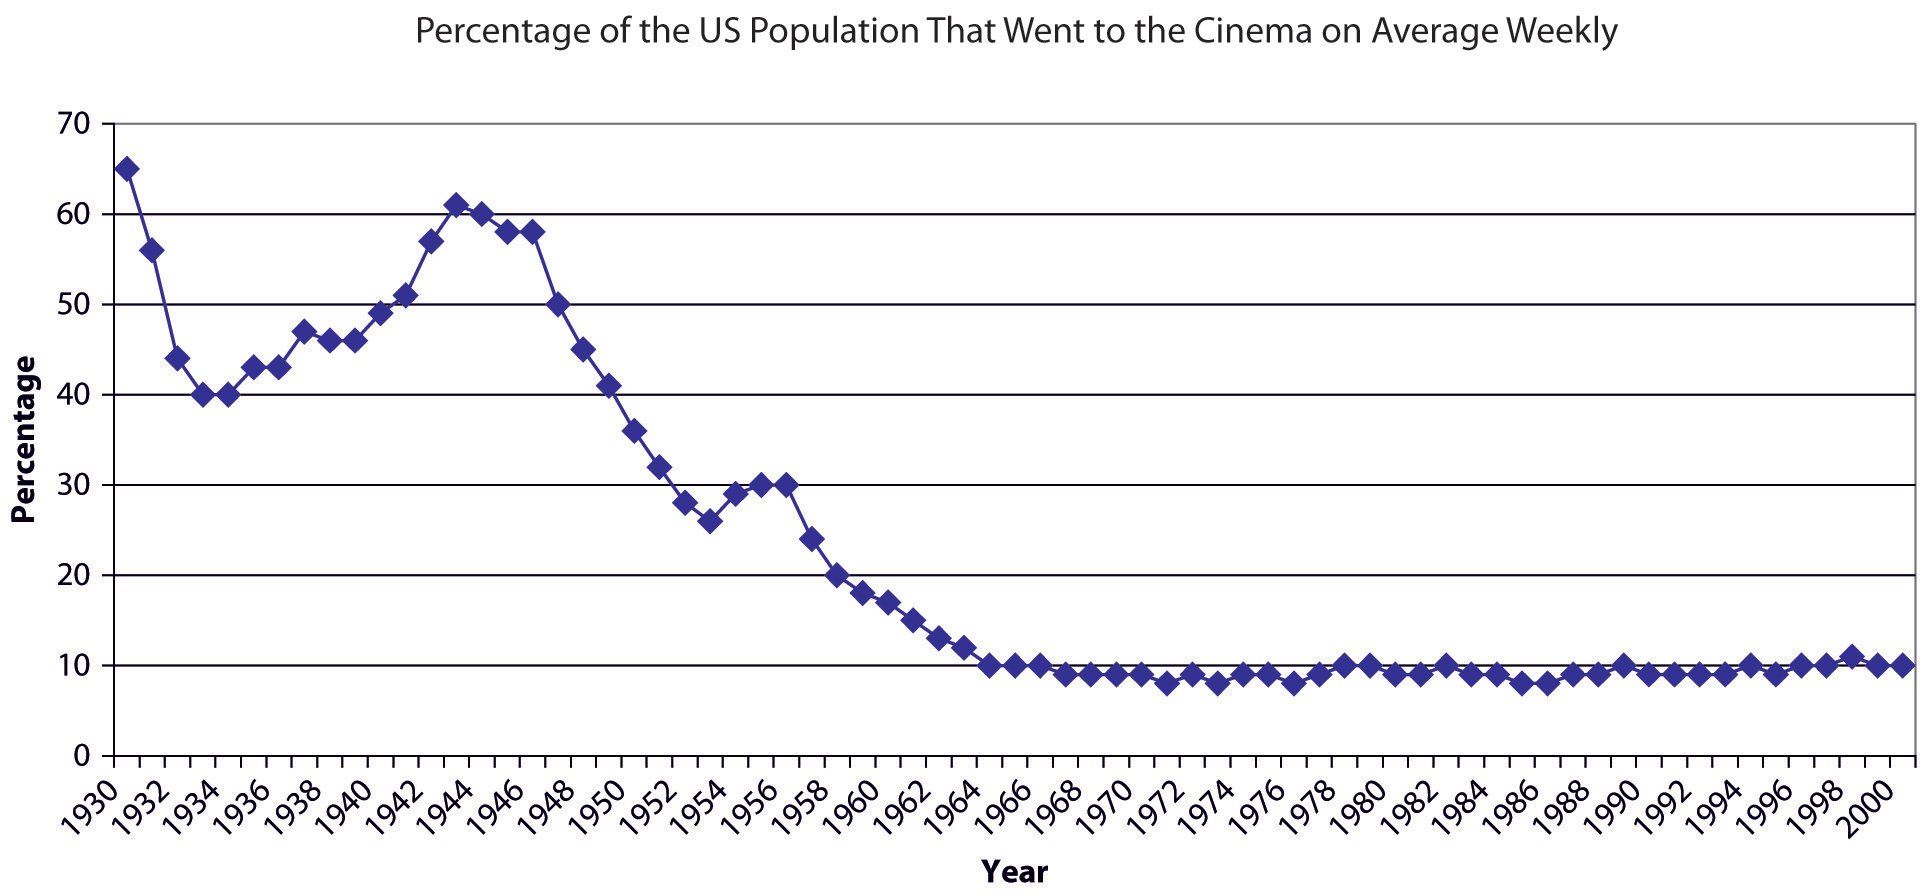 Média de freqüência semanal ao cinema nos EUA de 1930 a 2000